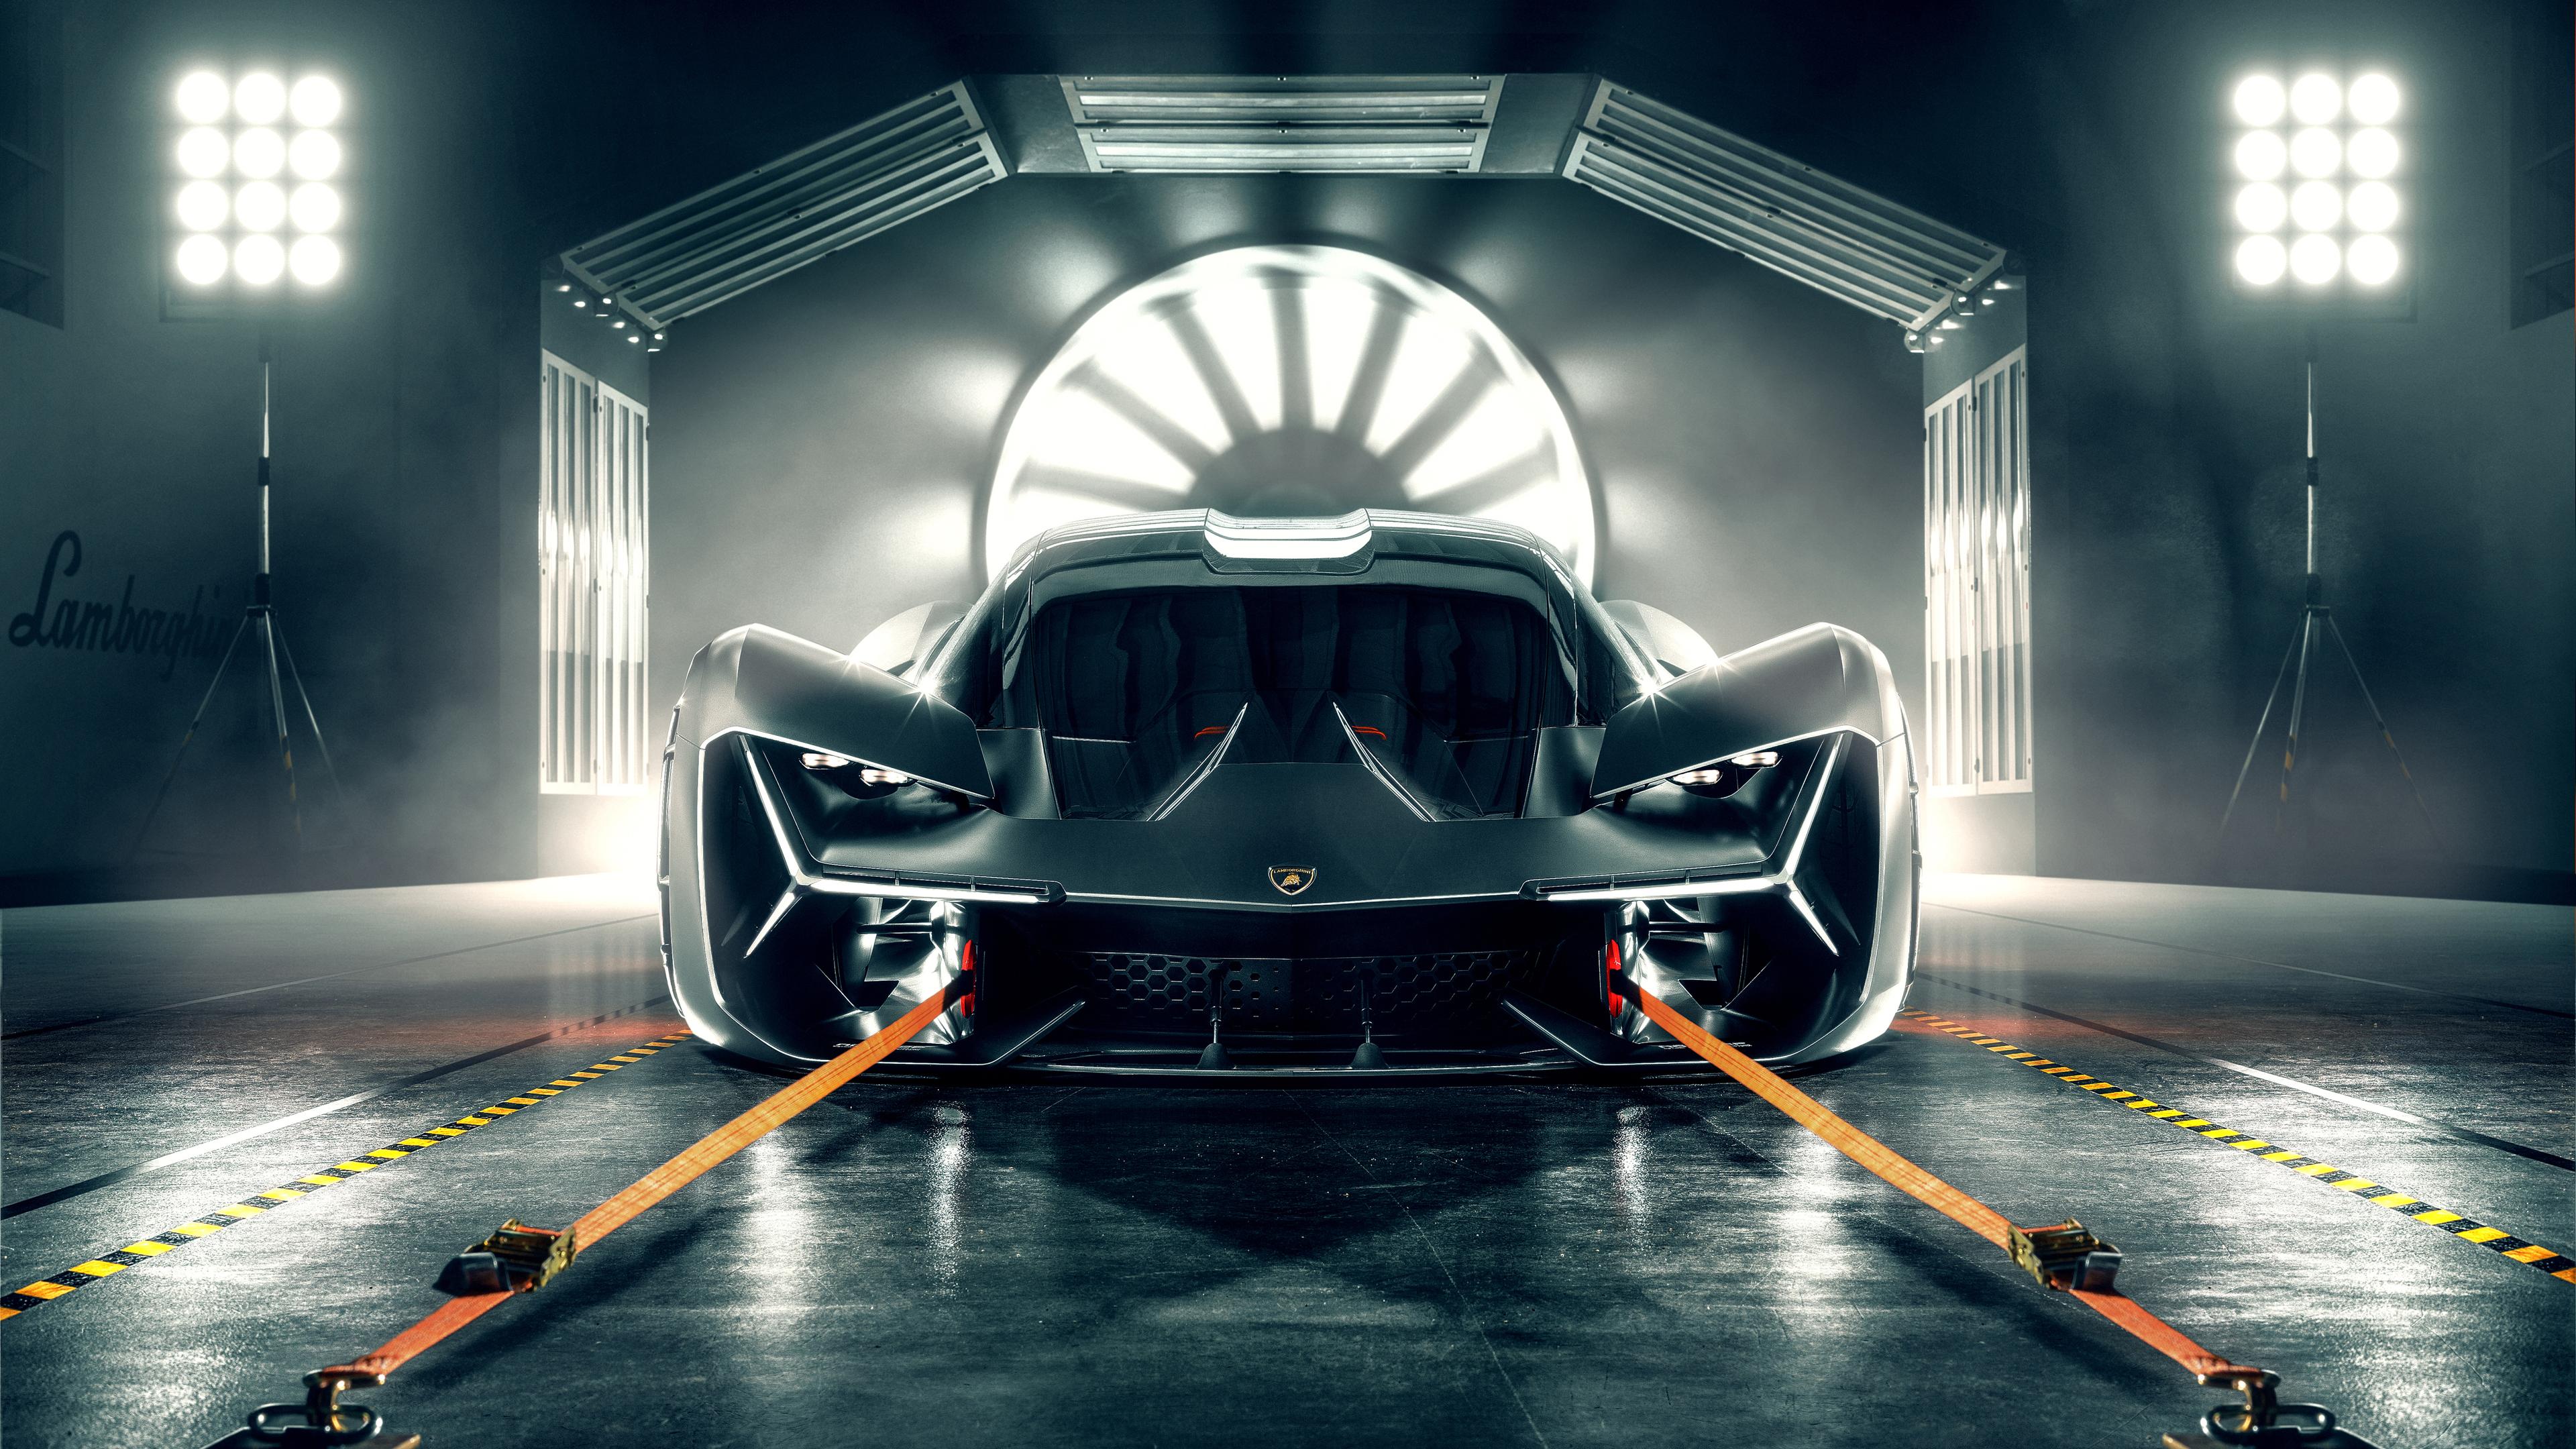 Wallpaper 4k Lamborghini Terzo Millennio 2019 Front View